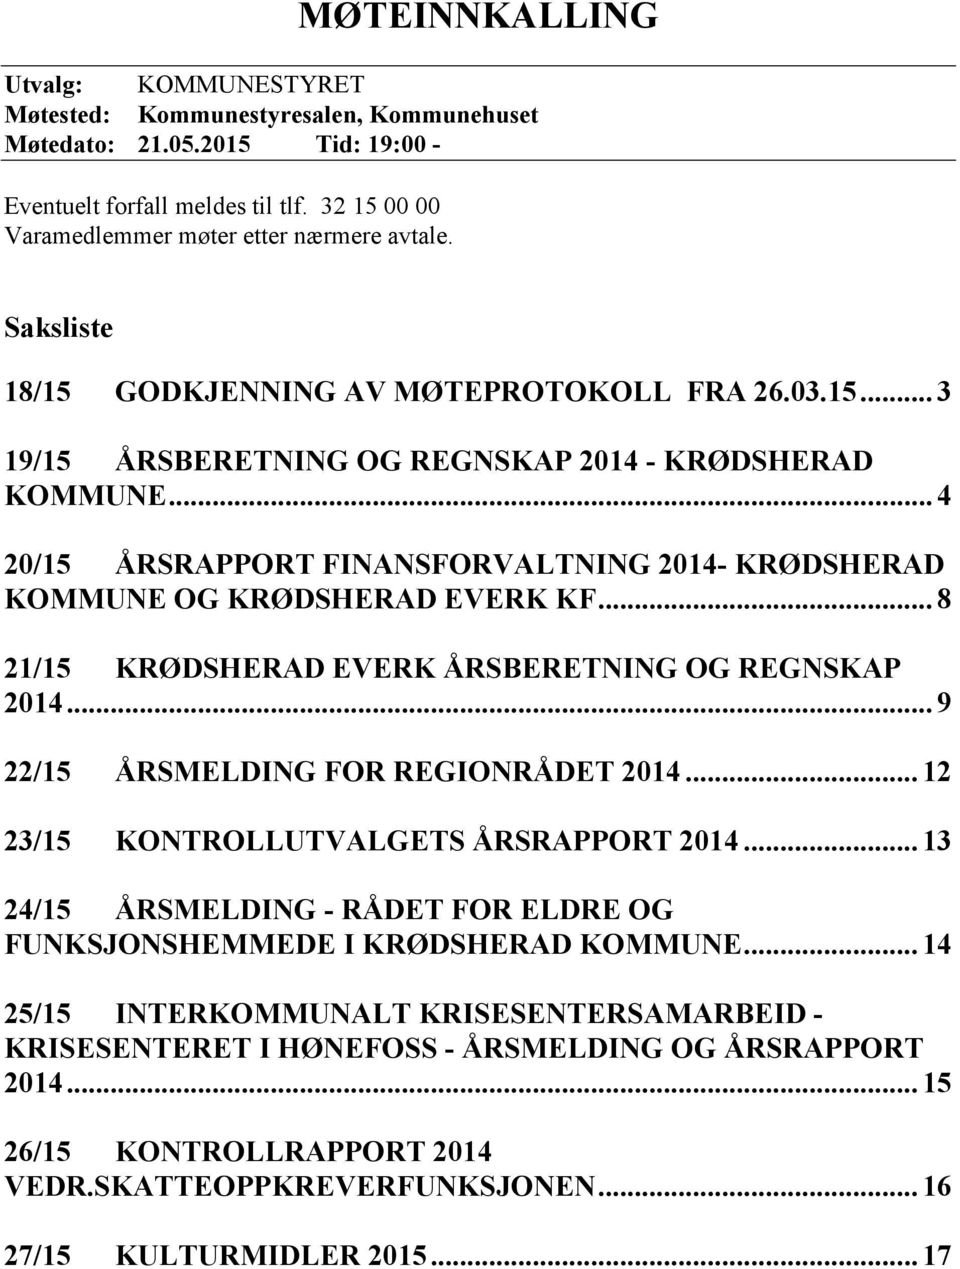 .. 4 20/15 ÅRSRAPPORT FINANSFORVALTNING 2014- KRØDSHERAD KOMMUNE OG KRØDSHERAD EVERK KF... 8 21/15 KRØDSHERAD EVERK ÅRSBERETNING OG REGNSKAP 2014... 9 22/15 ÅRSMELDING FOR REGIONRÅDET 2014.